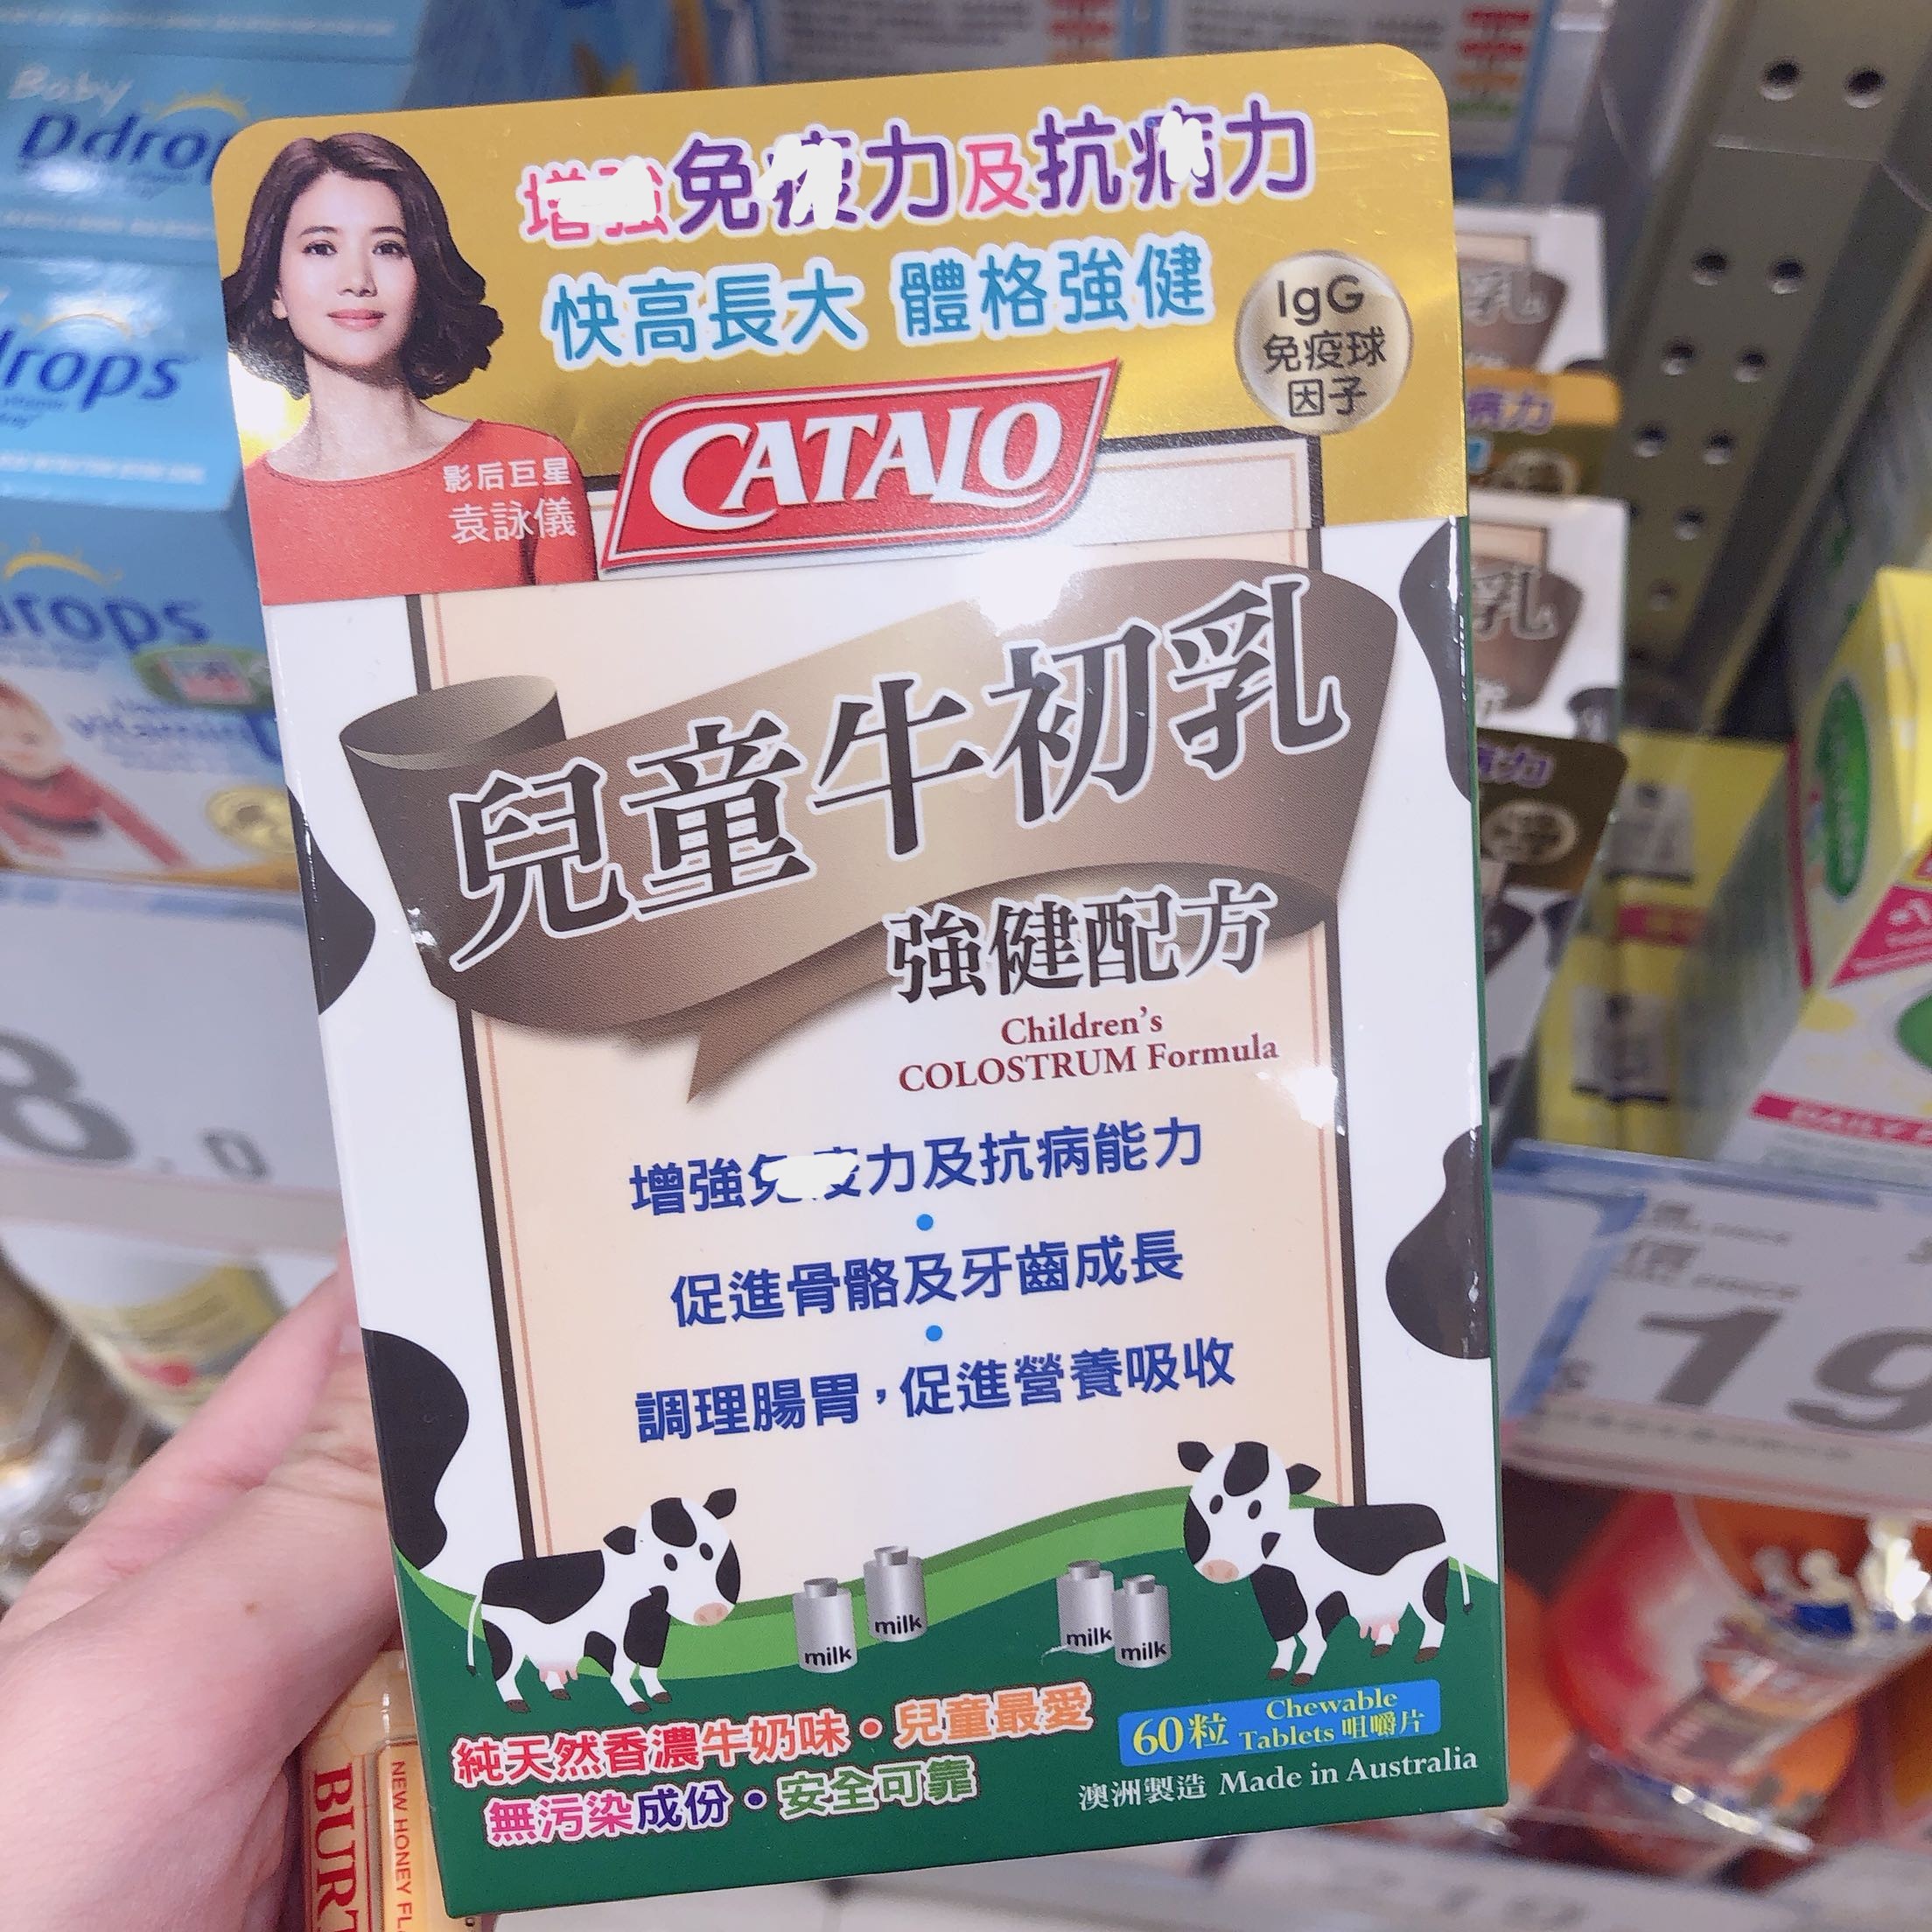 香港舜媽 catalo儿童牛初乳片 抵抗力 肠道健康 钙 长高